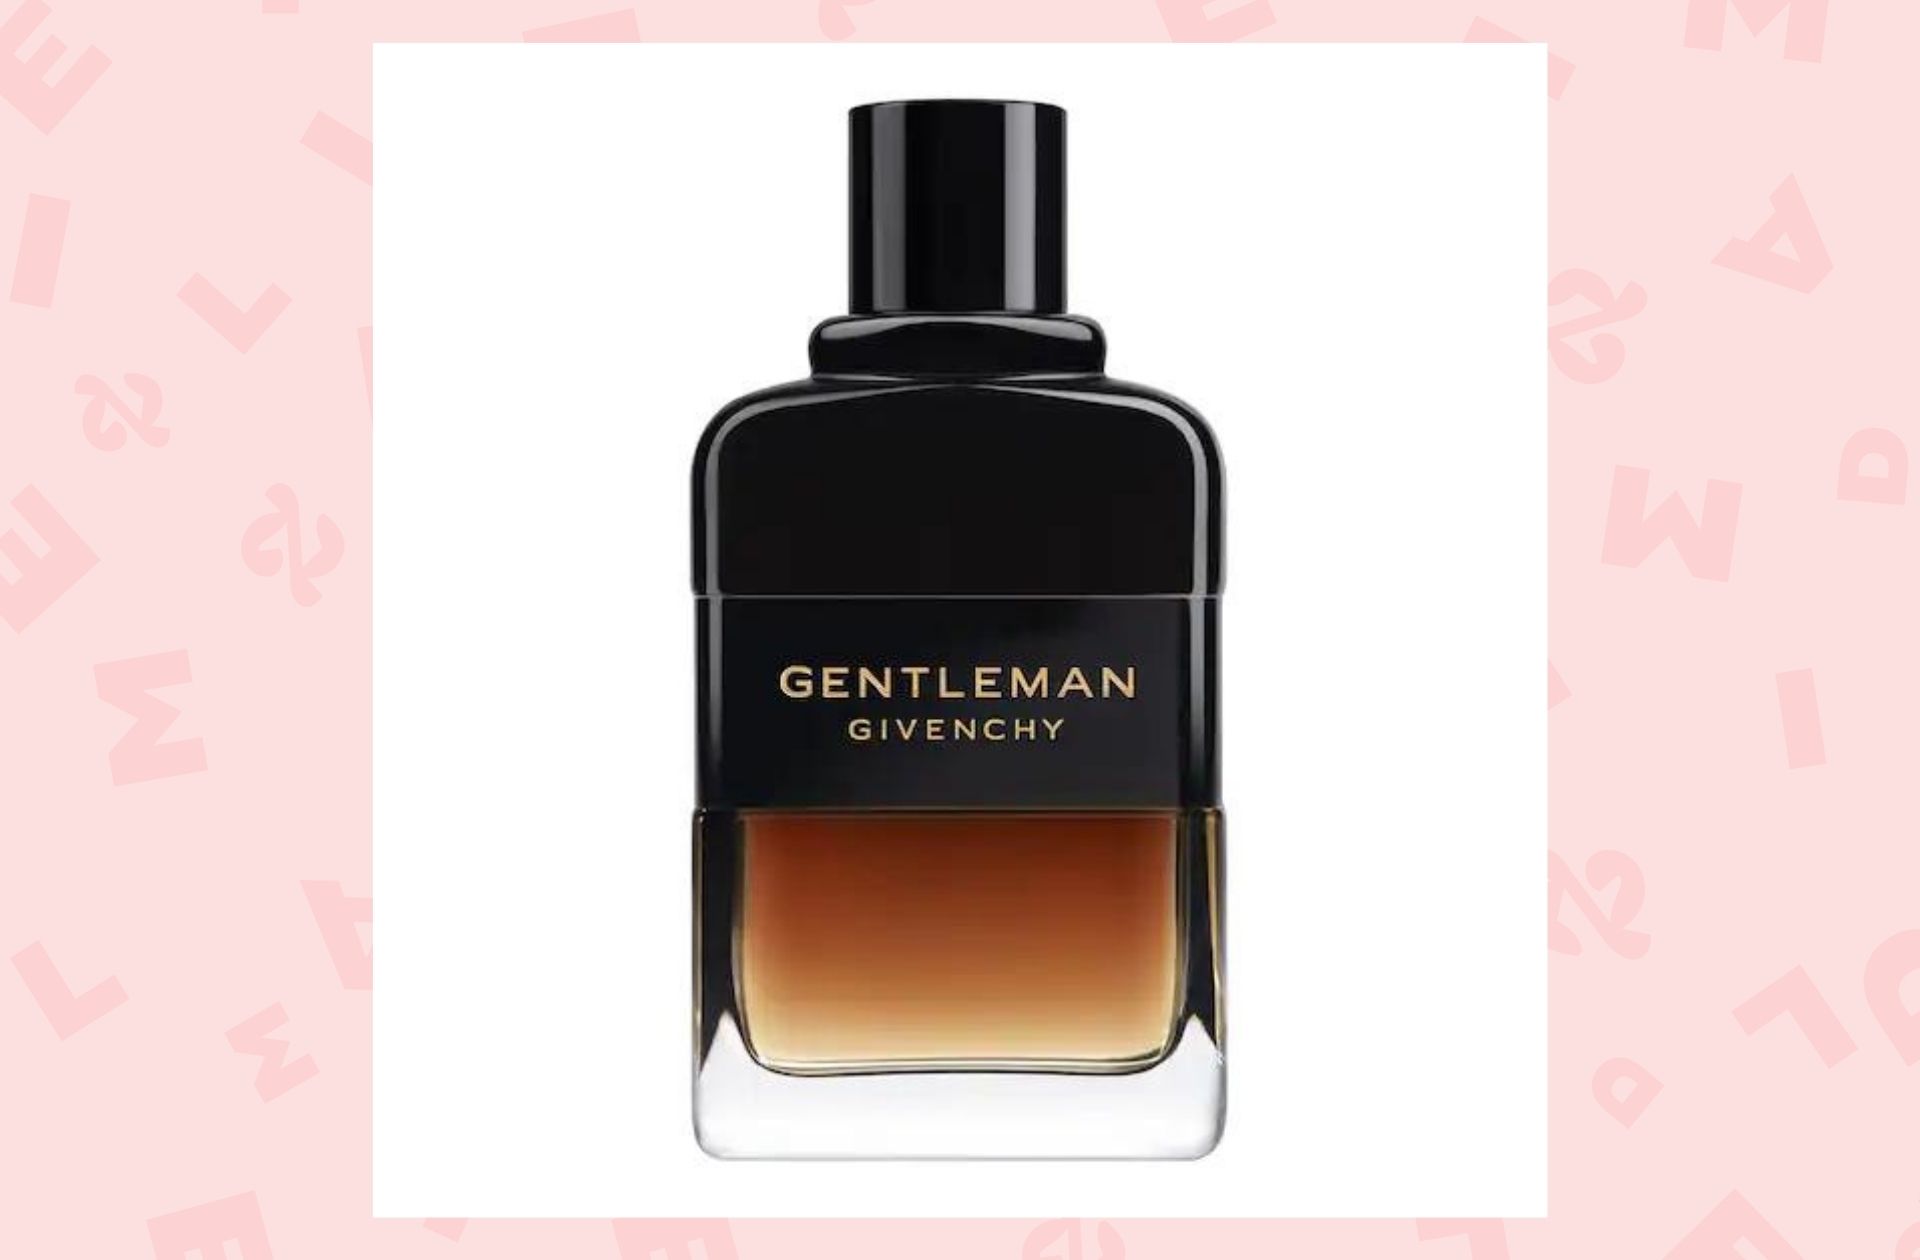 Eau de parfum Gentleman Réserve Privée — Givenchy — 109€ les 100 ml.